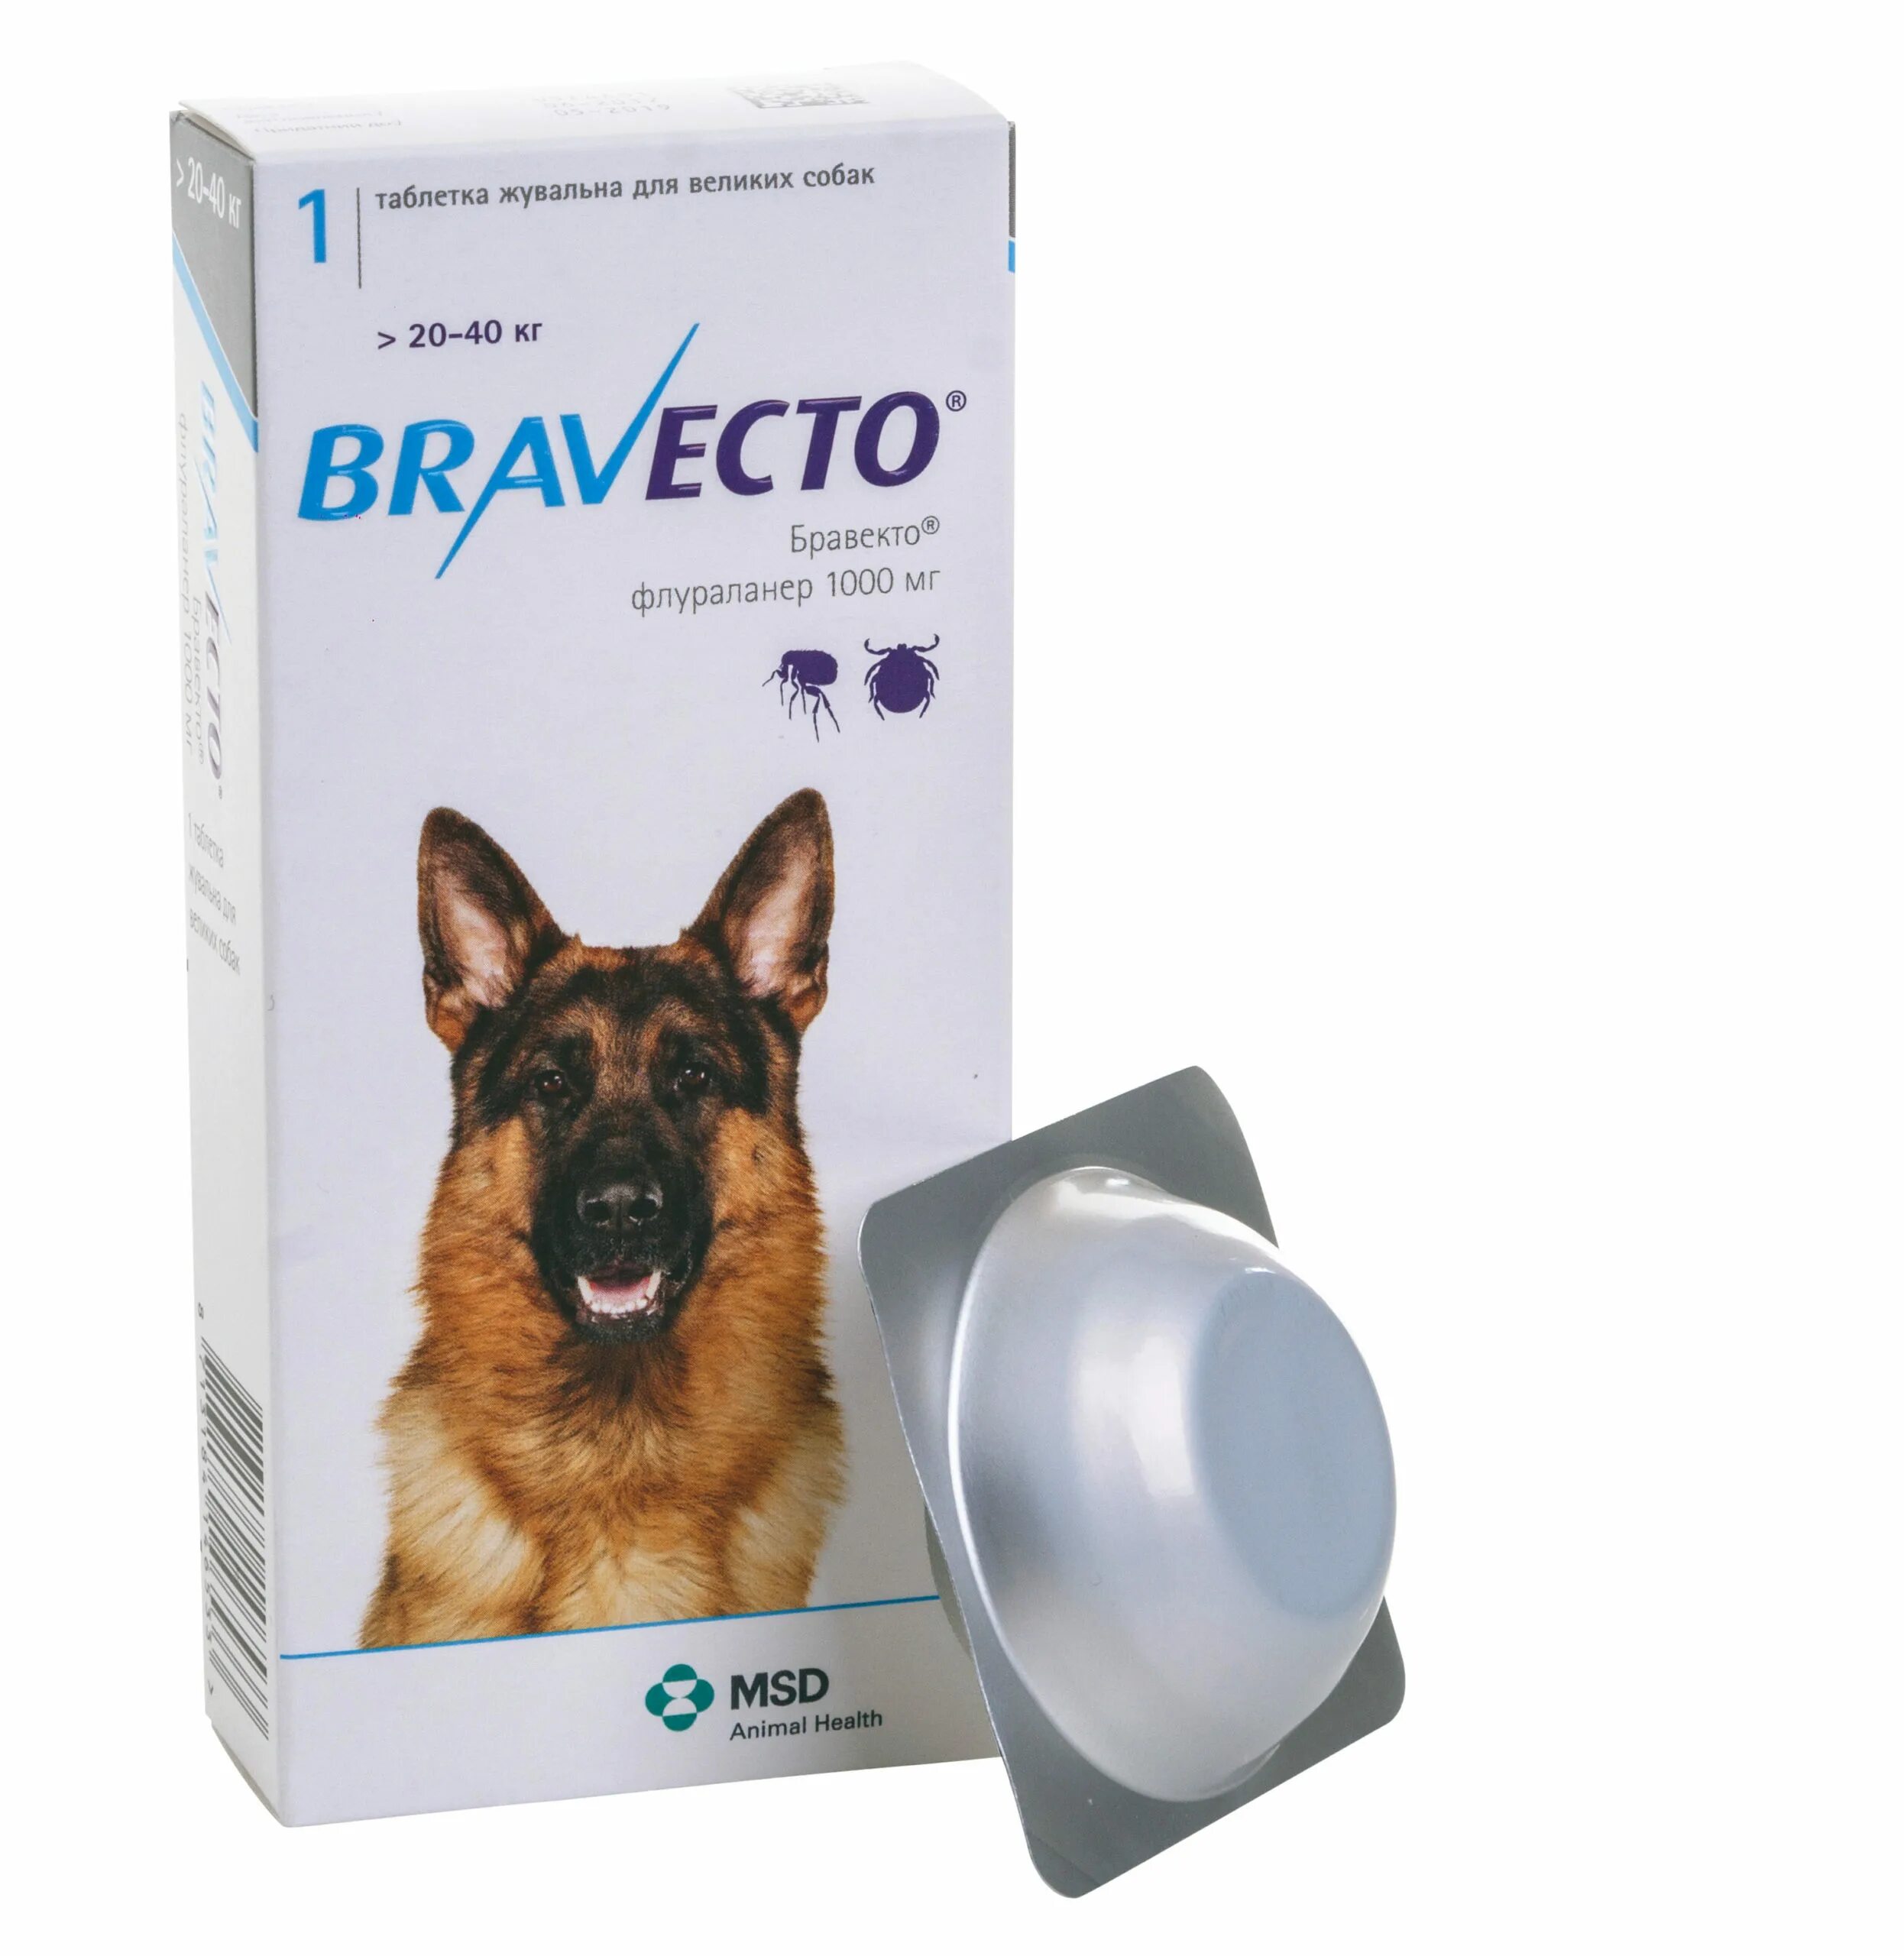 Бравекто для собак 20-40 кг таблетки. Бравекто (Bravecto) 20-40 кг, таблетка 1000 мг. Таблетки от клещей для собак Бравекто. Бравекто 112.5 мг Флураланер. Купить бравекто для собак до 5 кг